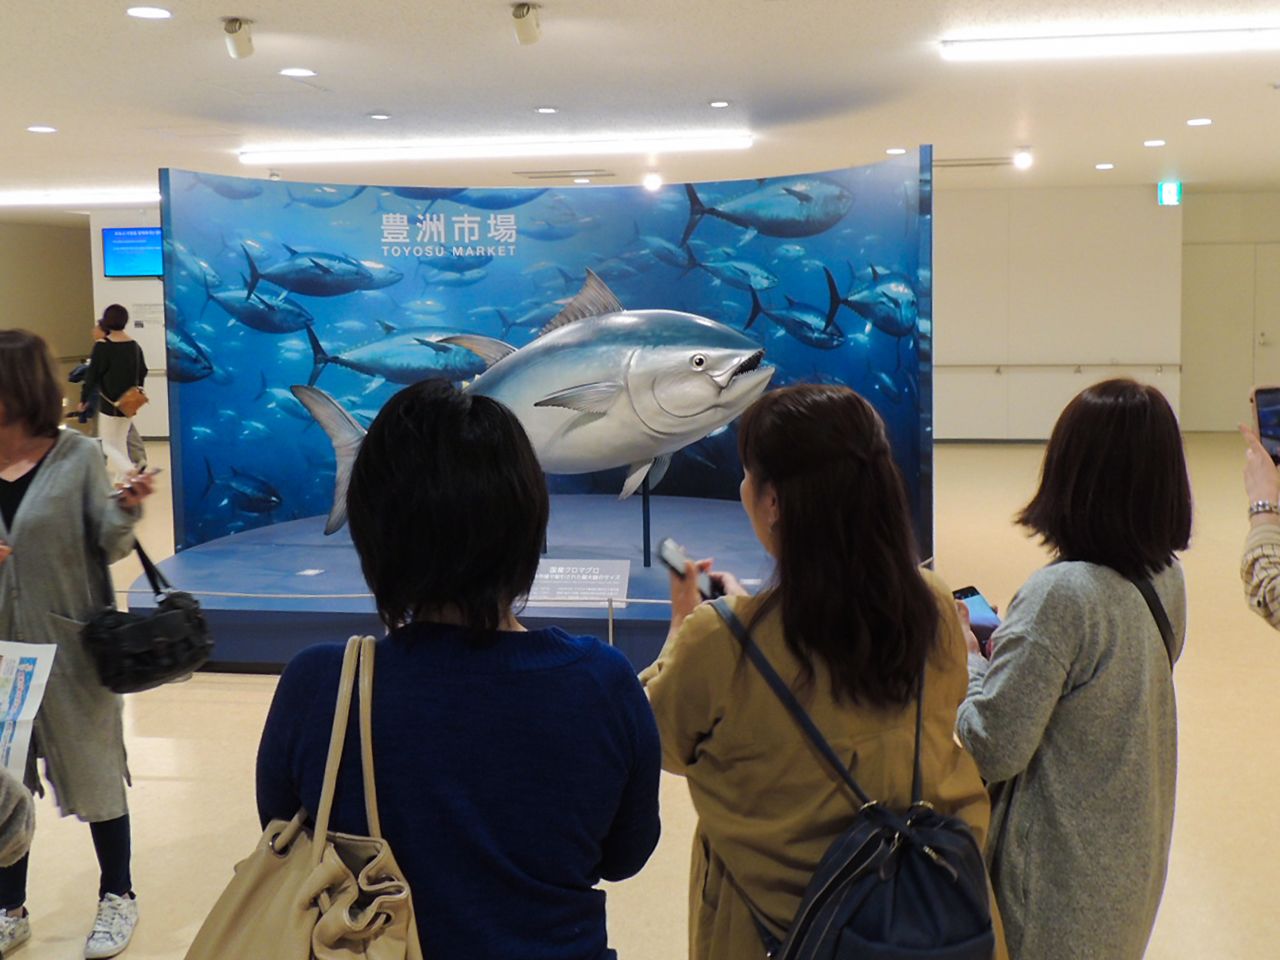 水产批发楼入口处展示着当年筑地市场到货的最大一条蓝鳍金枪鱼（496公斤）模型，成为网红拍照点  图片：笔者提供